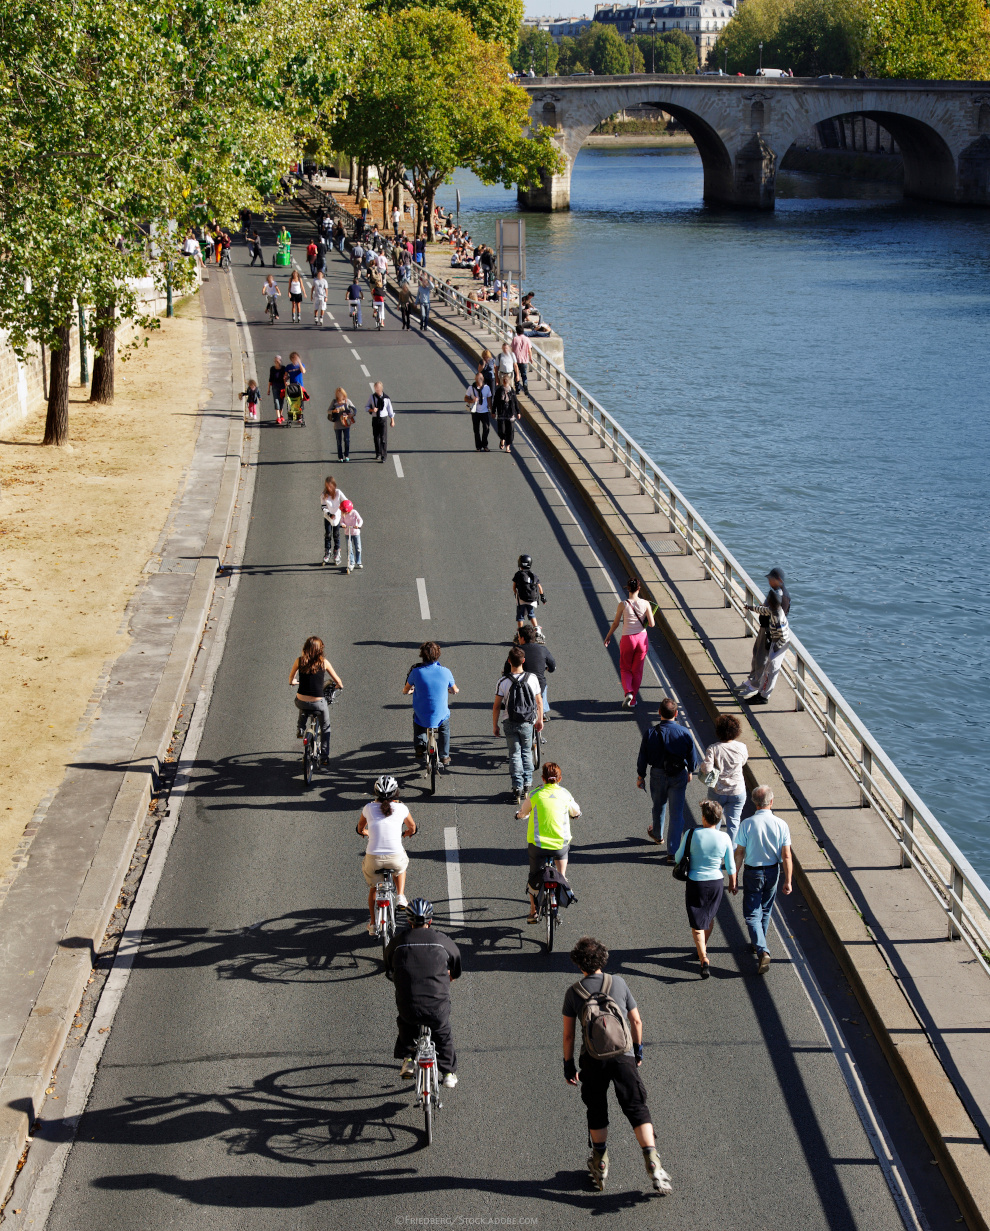 Auf einer breiten Straße entlang des Flusses Seine in Paris laufen Menschen, fahren Fahrrad oder INline-Skates